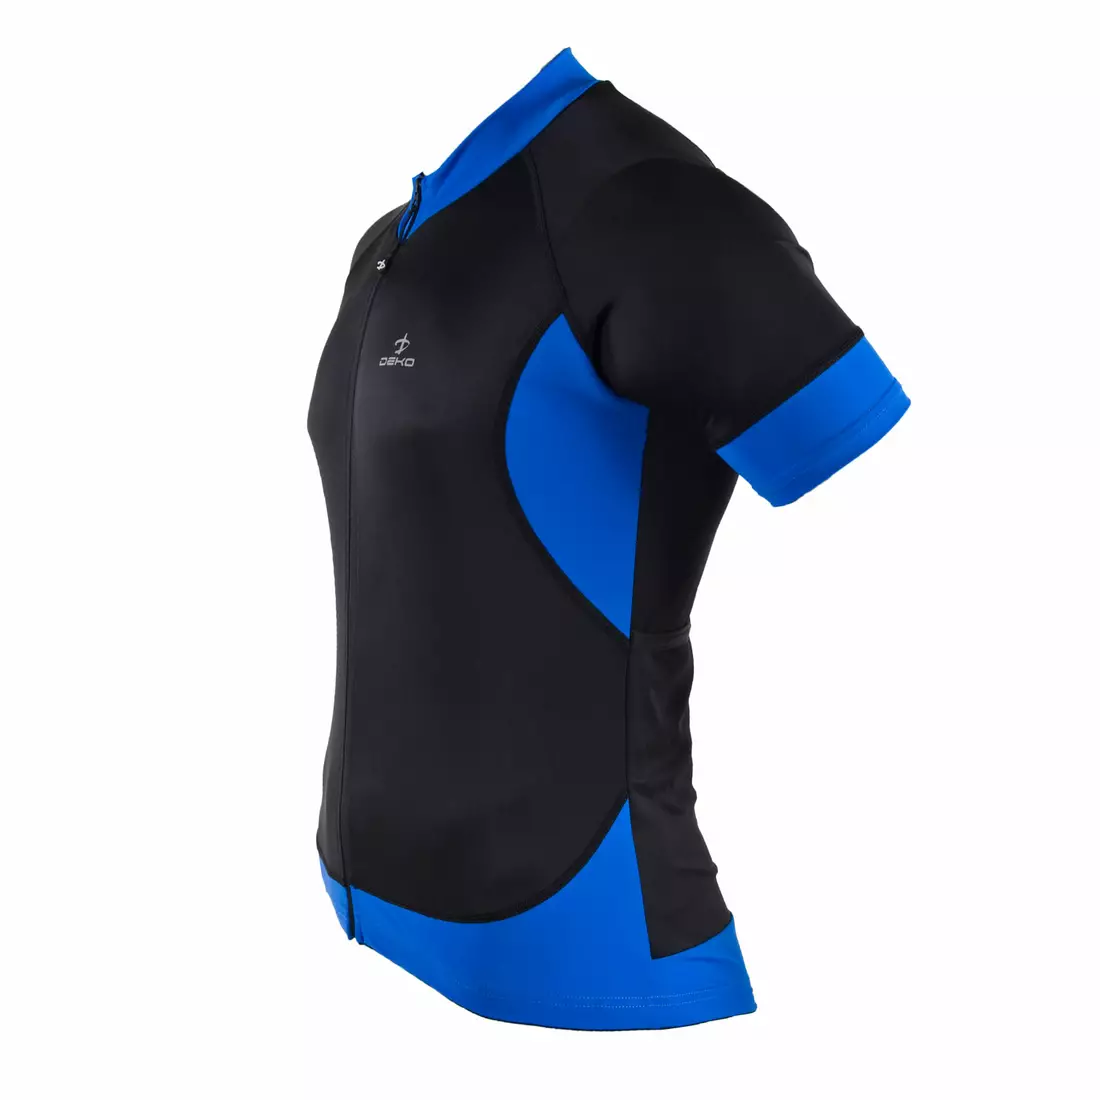 DEKO BURAQ pánský cyklistický dres, krátký rukáv, černý / modrý